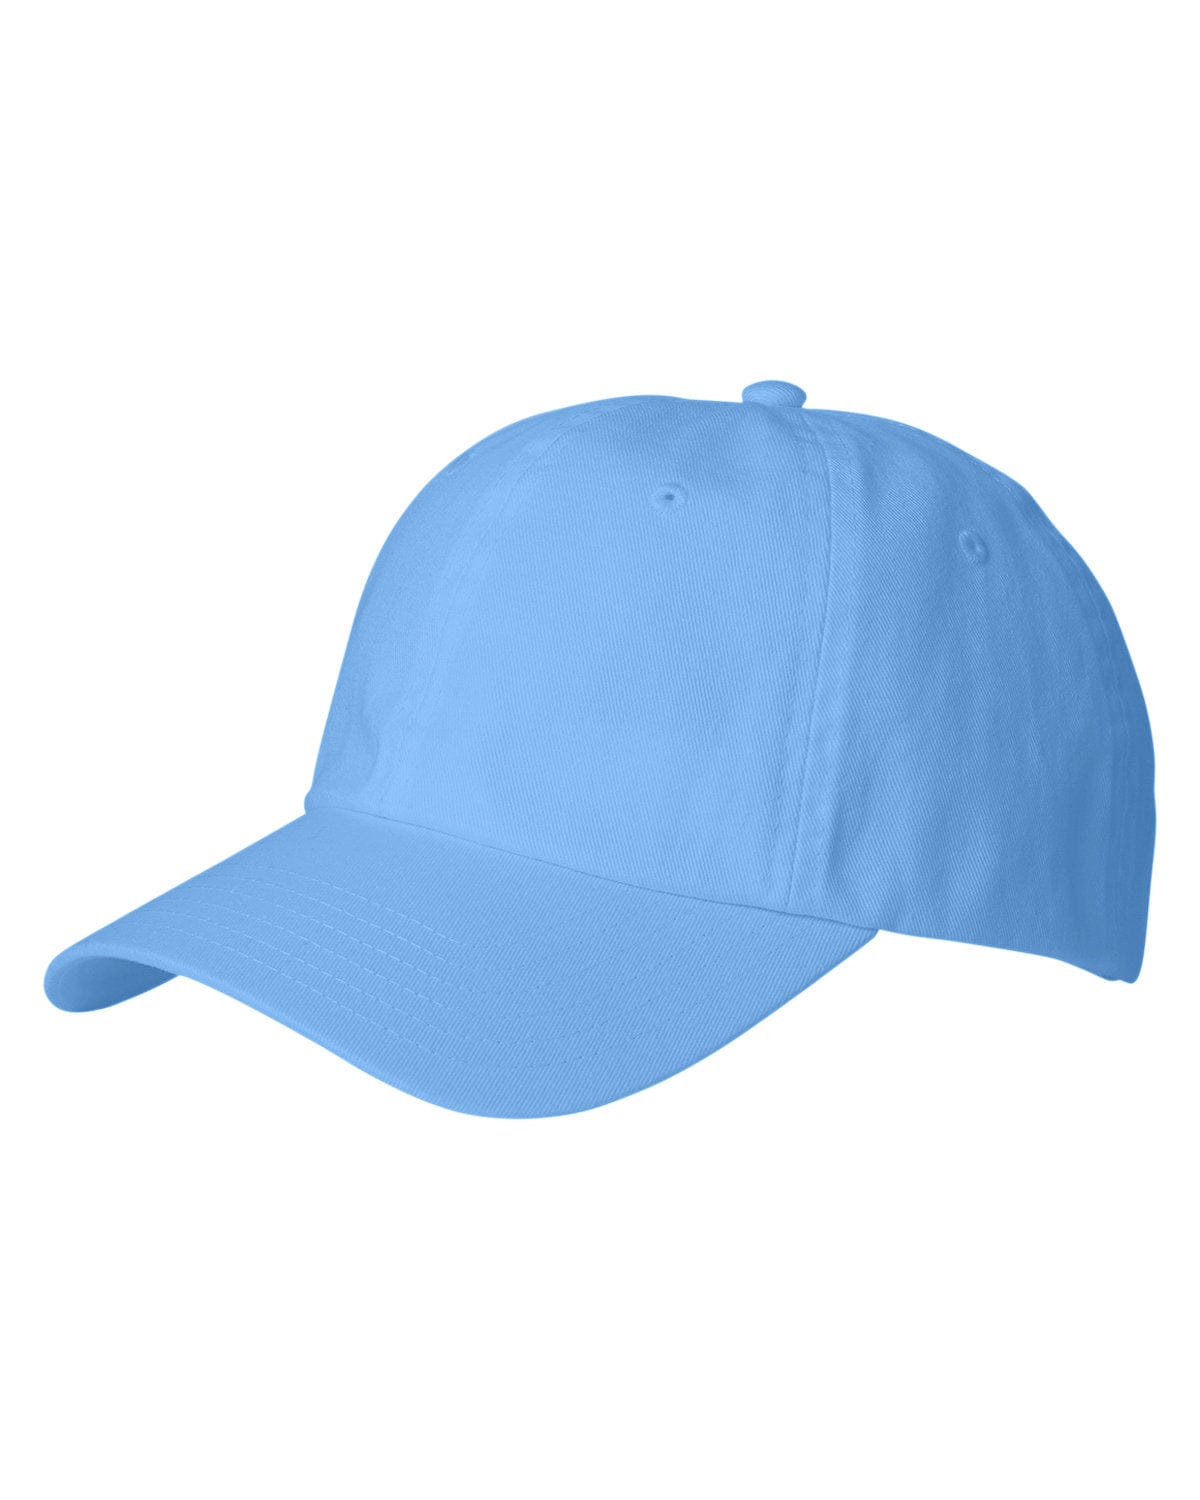 Vineyard Vines Men's Hat, Cap 100% Cotton 1F000090-0424-10001 Surf